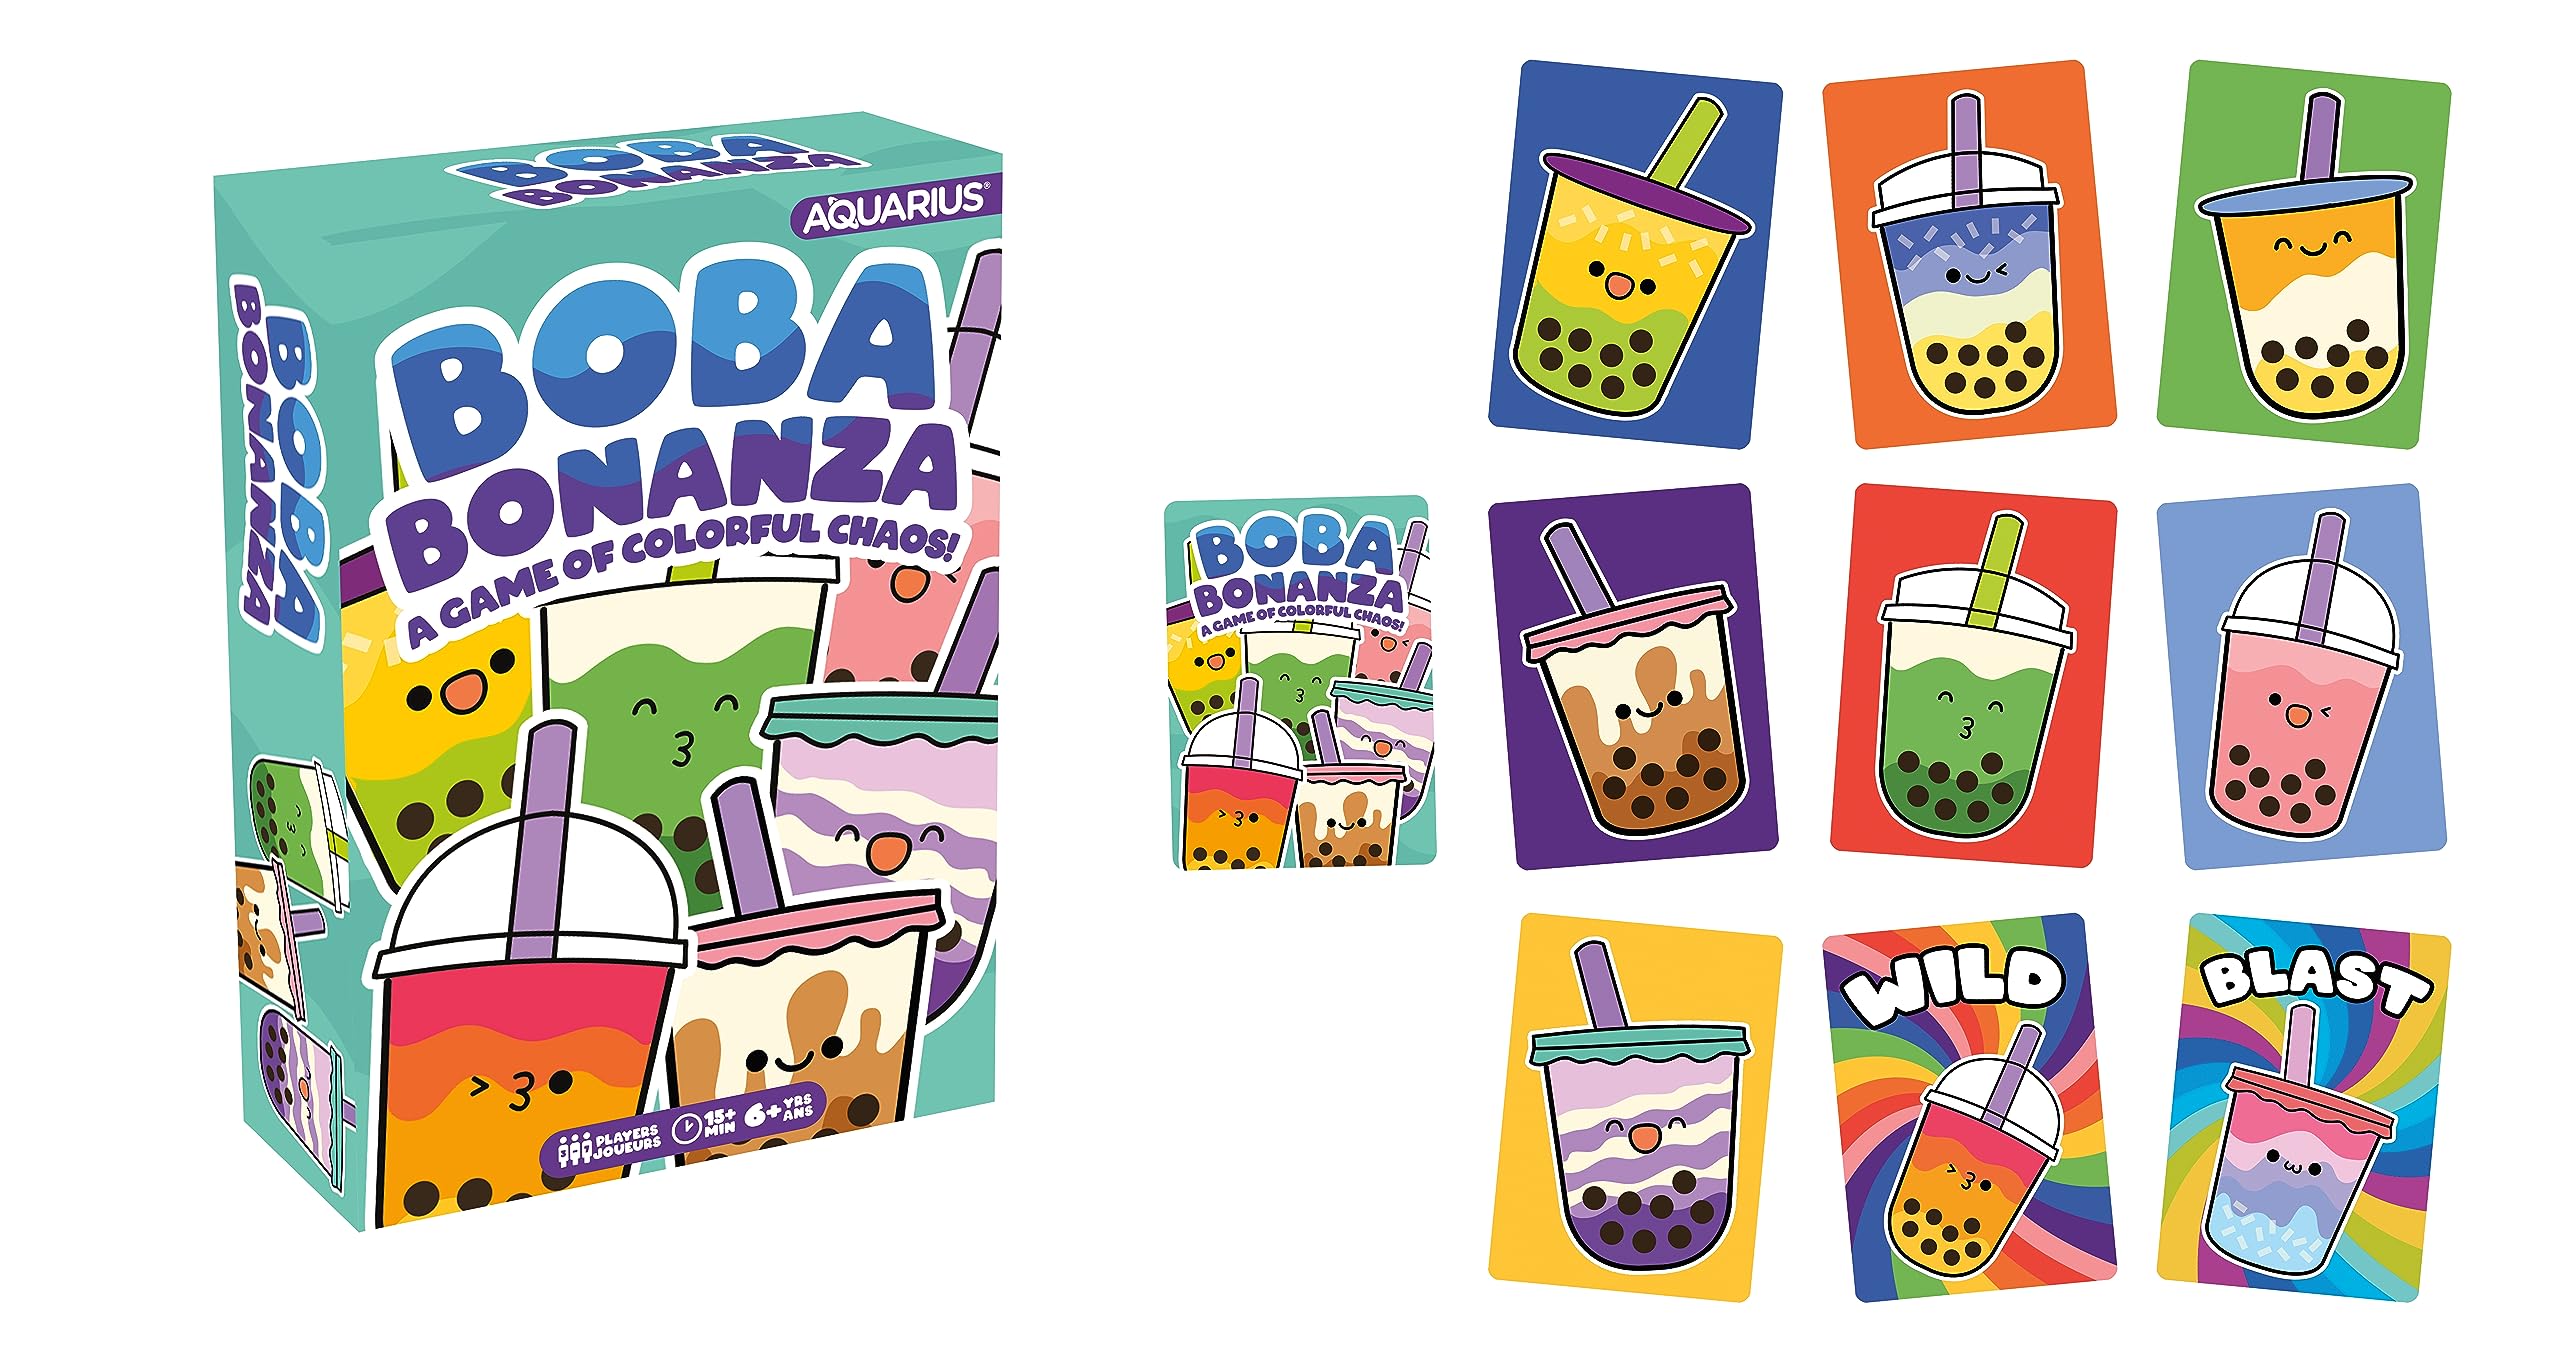 AQUARIUS Boba Bonanza Card Game - Boba Bonanza Card Game - Great Family Fun - Ages 6+ - Officially Licensed for Fun - Boba Bonanza - Merchandise & Collectibles